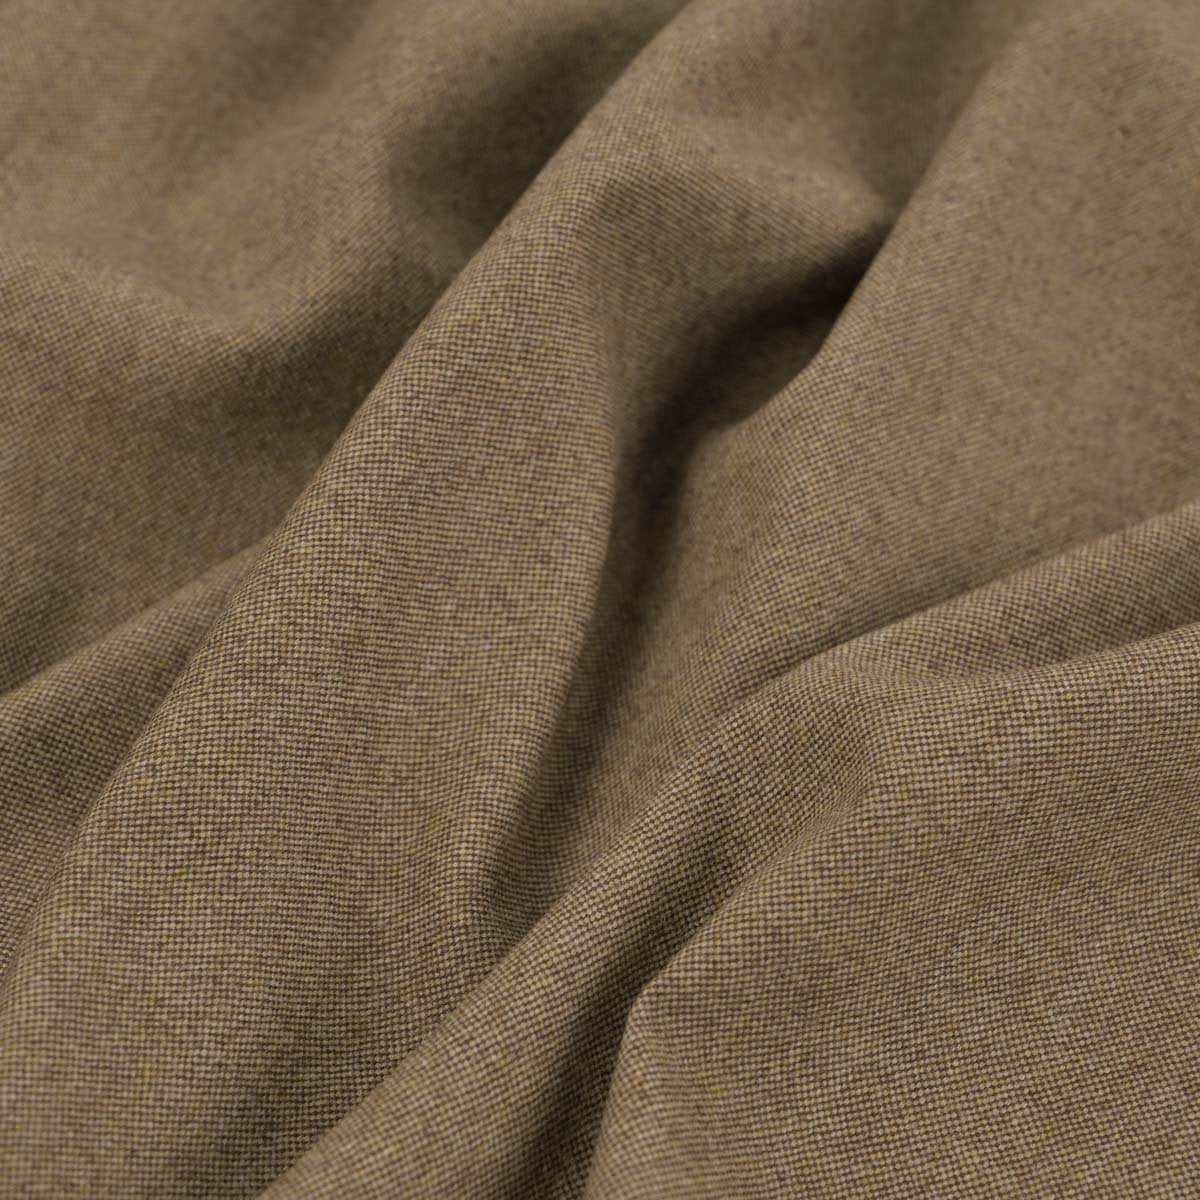 Beige Suiting Tweed Fabric 96509